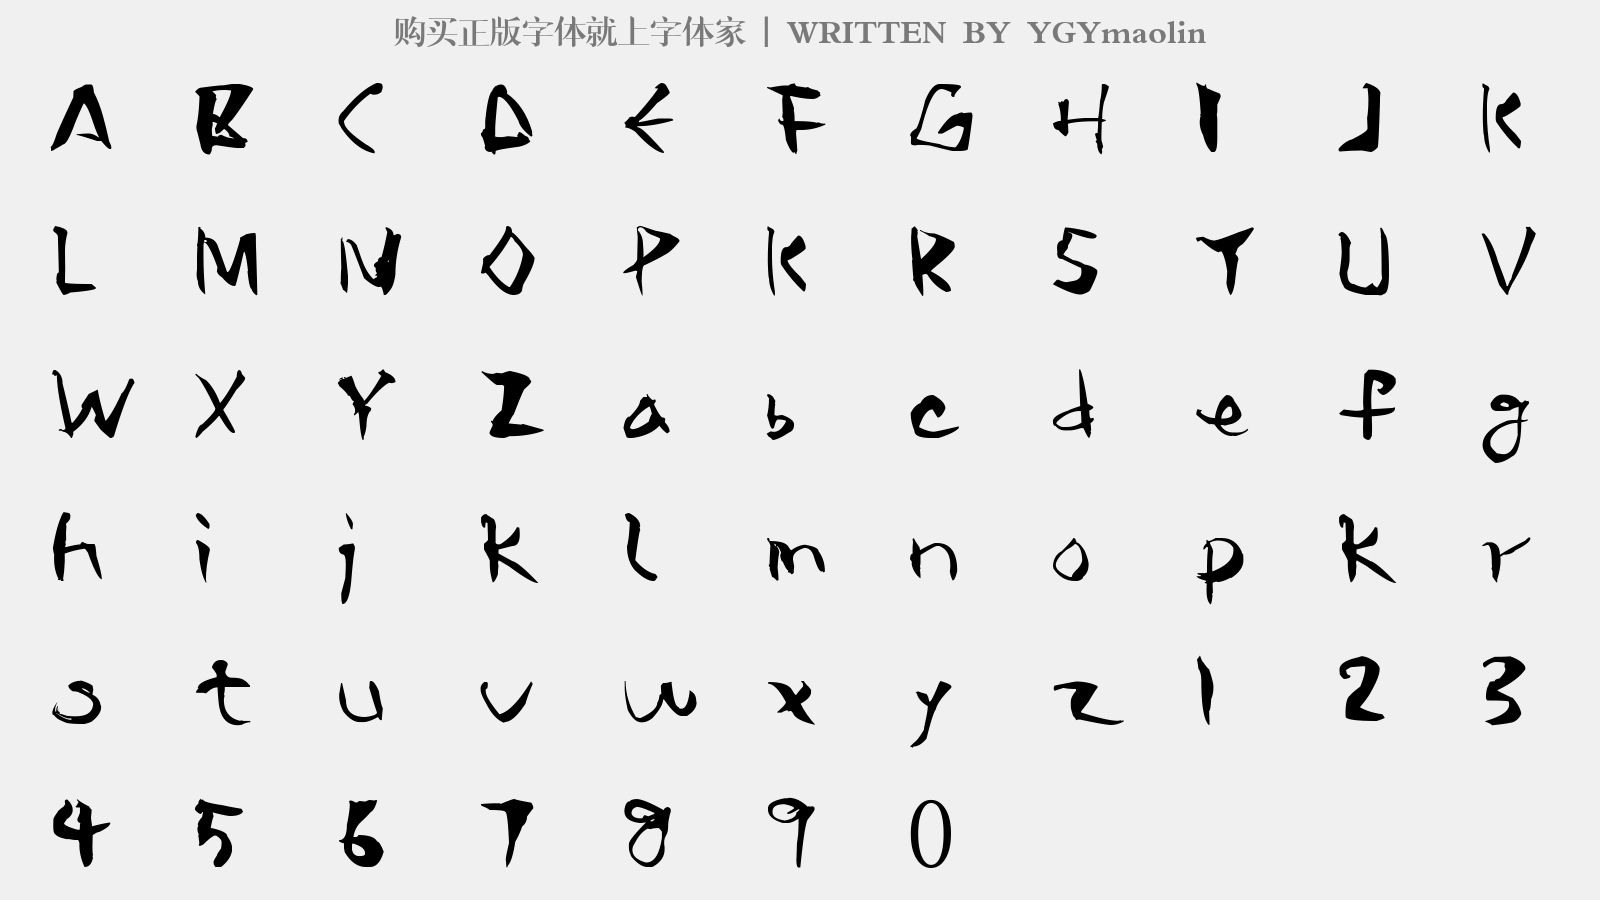 YGYmaolin - 大写字母/小写字母/数字